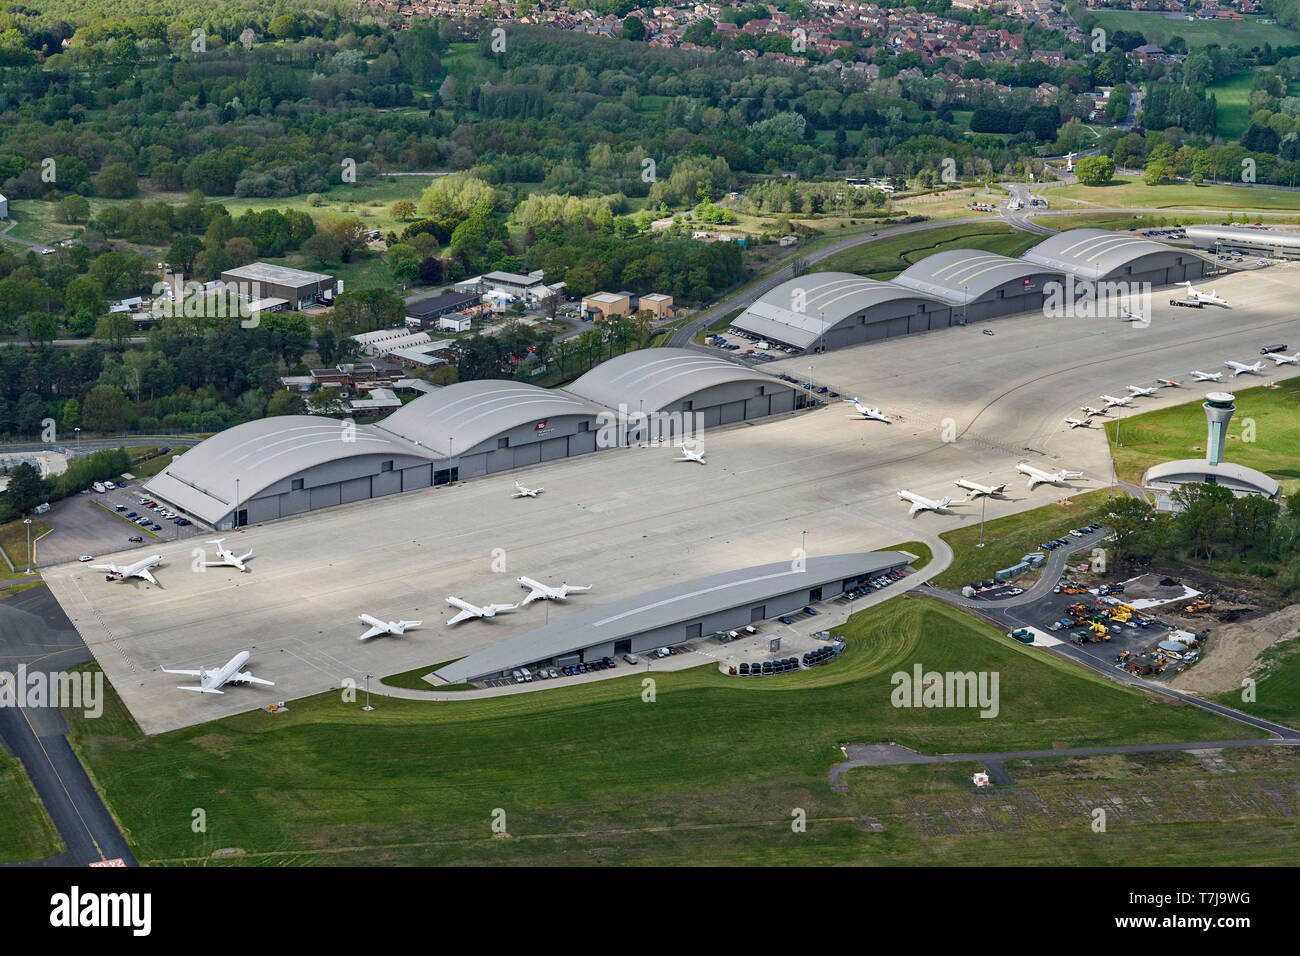 Une vue aérienne de l'aéroport de Farnborough, Angleterre du Sud-Est, Royaume-Uni Banque D'Images